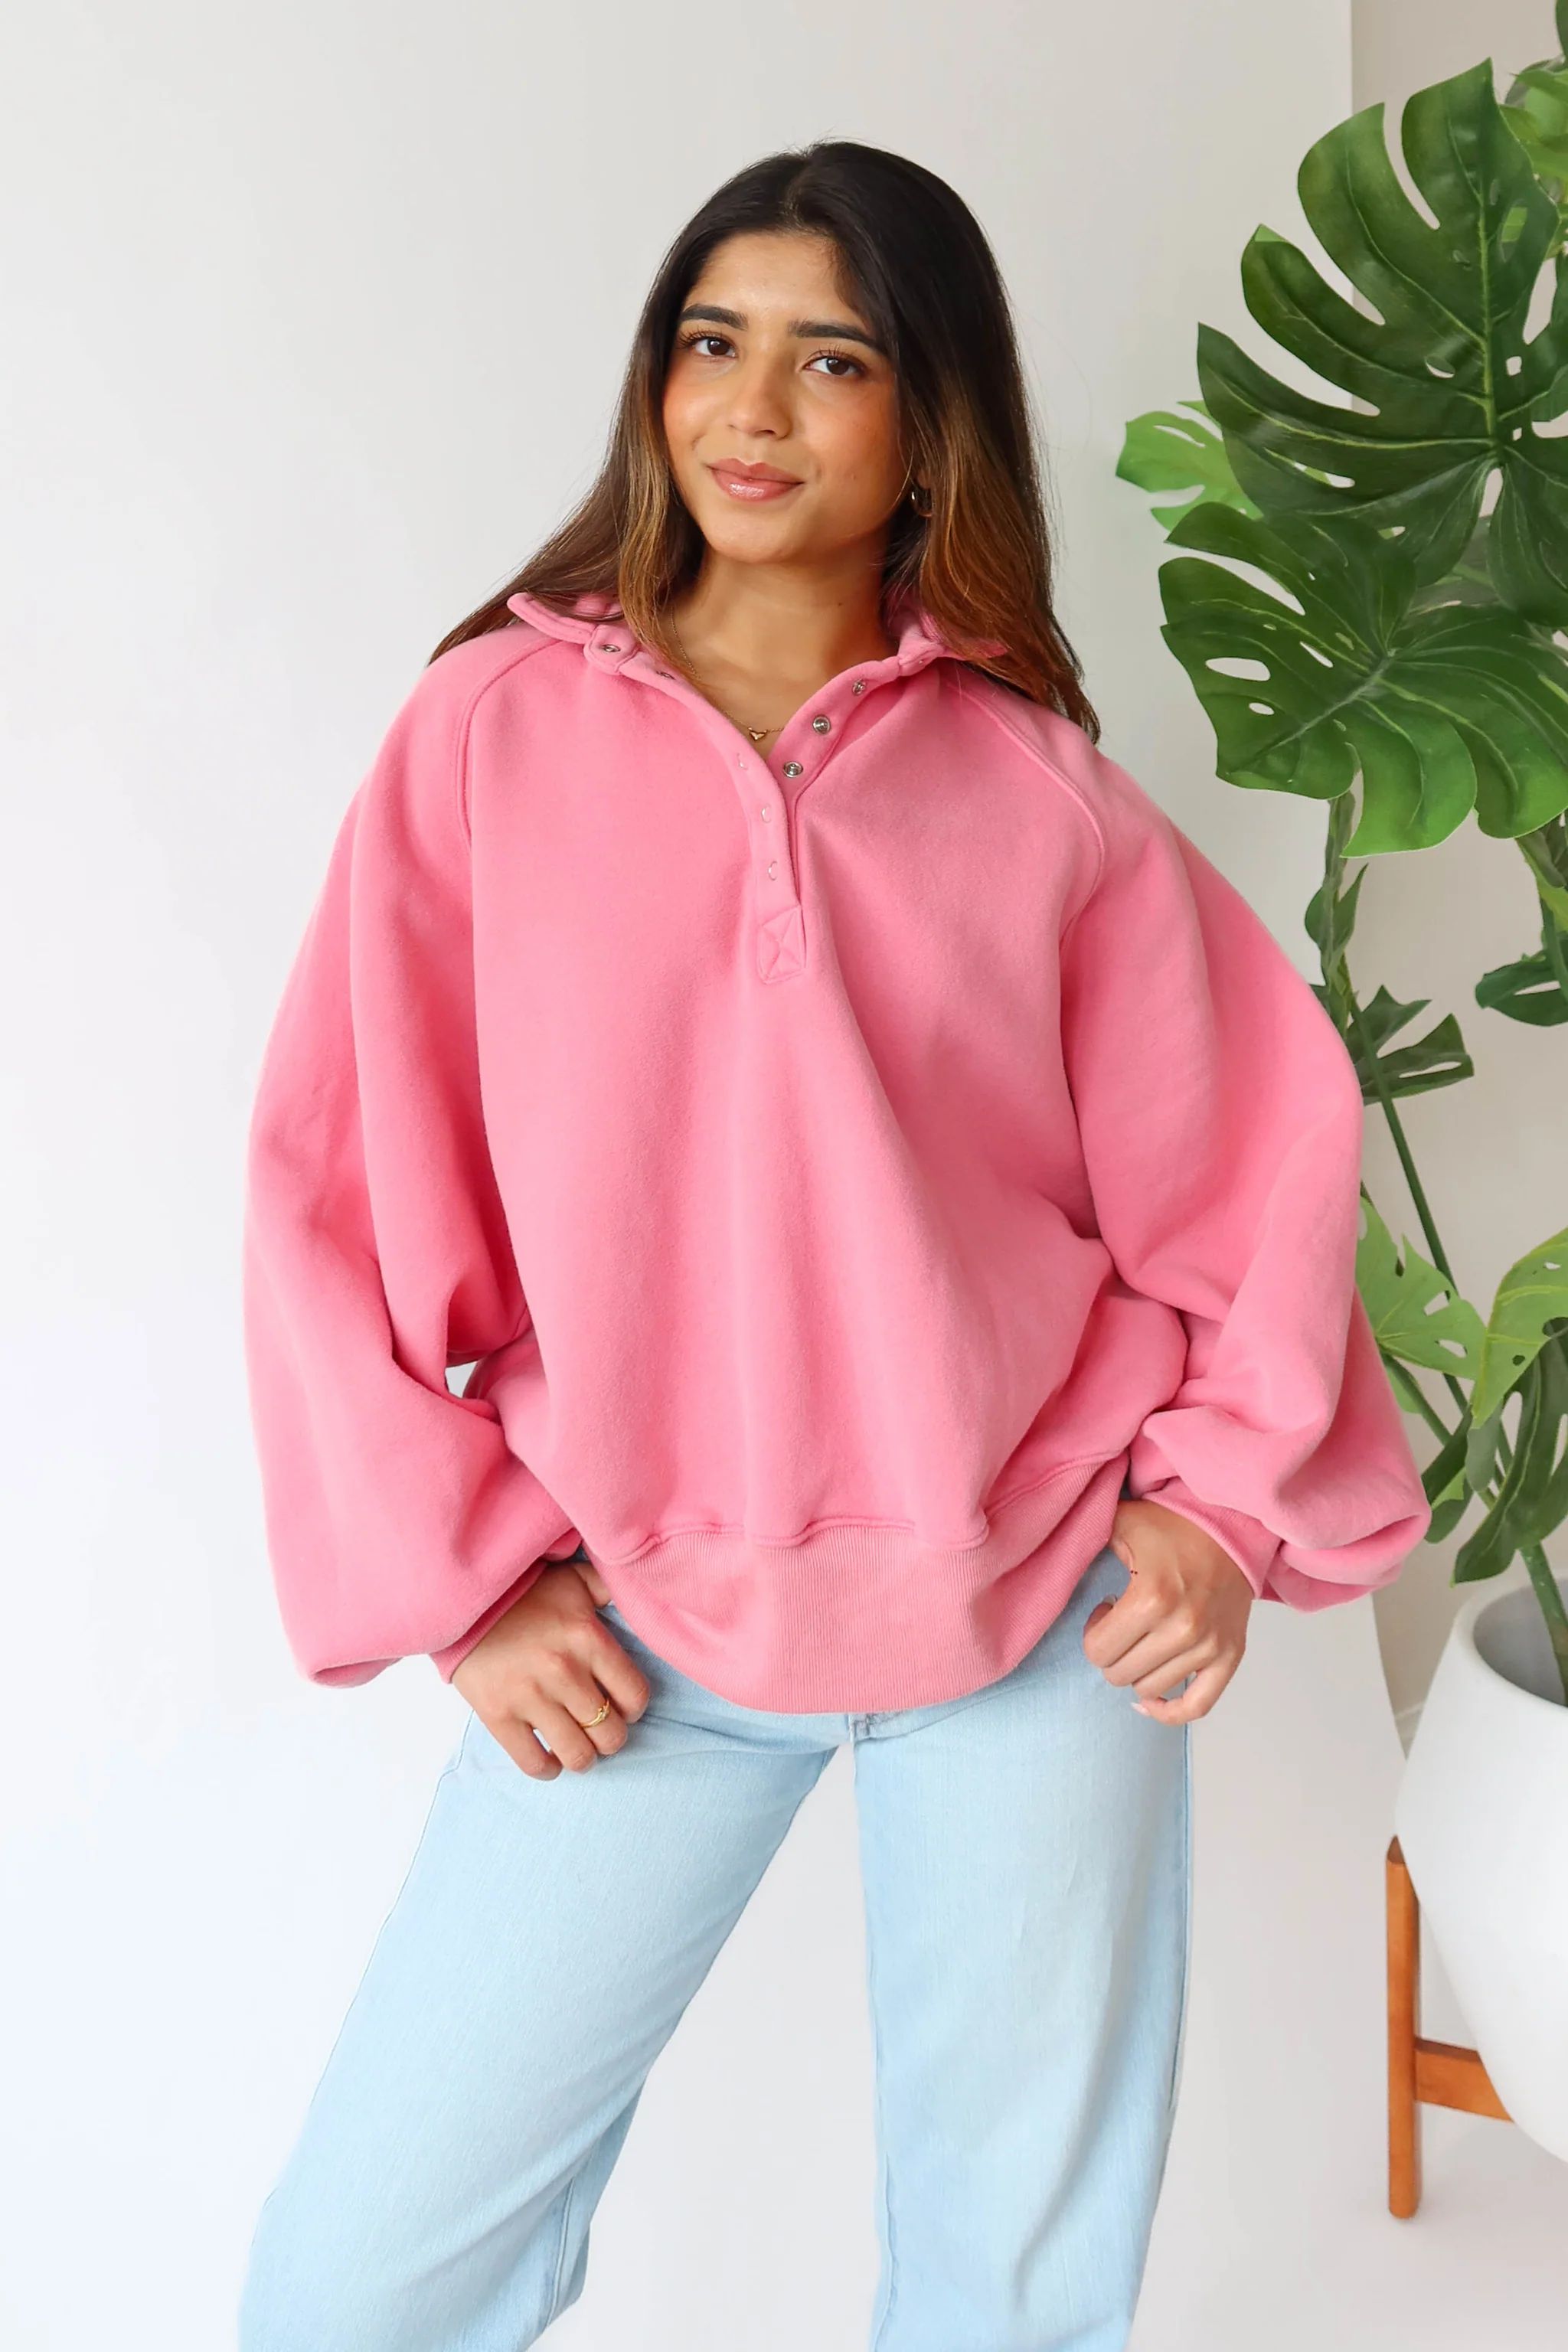 Lennon Sweatshirt in Pink | Grey Bandit